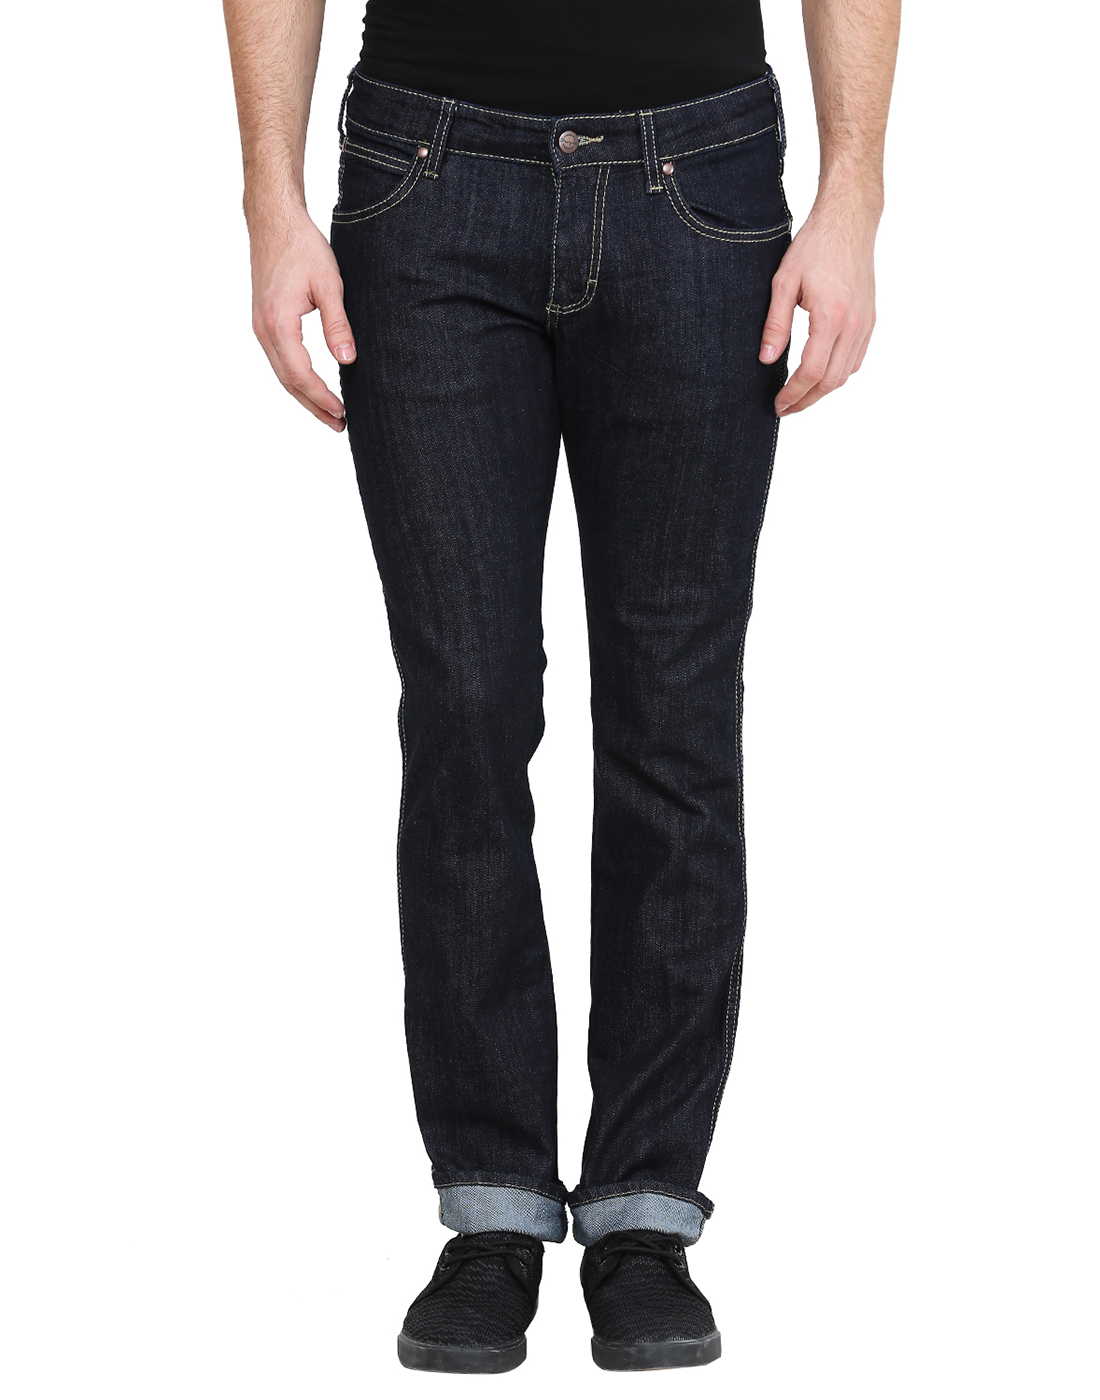 Buy Wrangler Ink Blue Jeans For Men Online @ ₹1437 from ShopClues